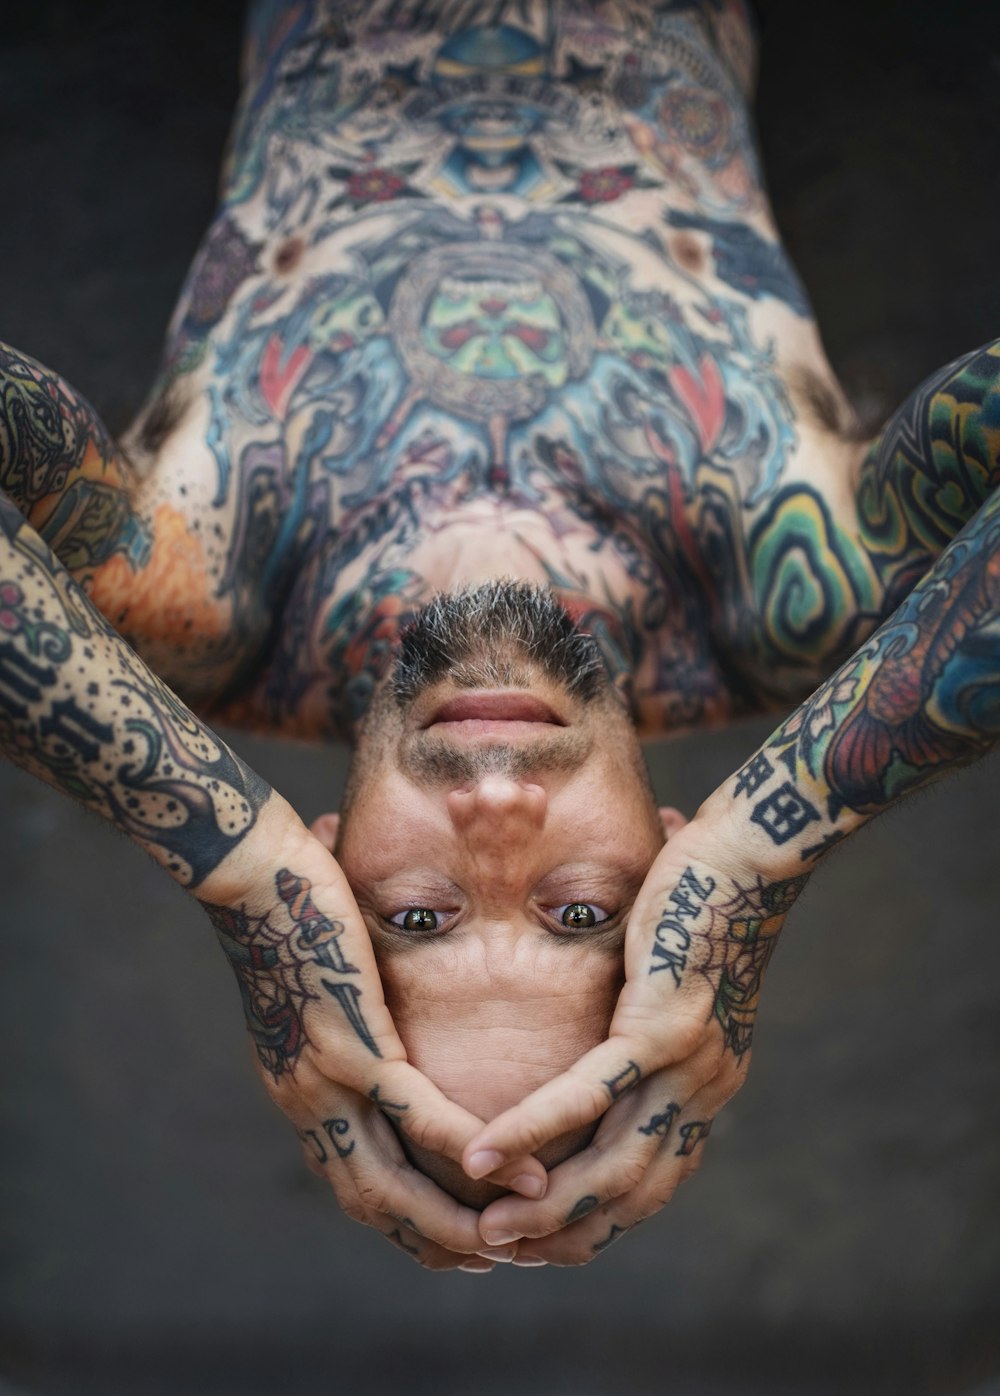 homem com tatuagens nos braços e no corpo